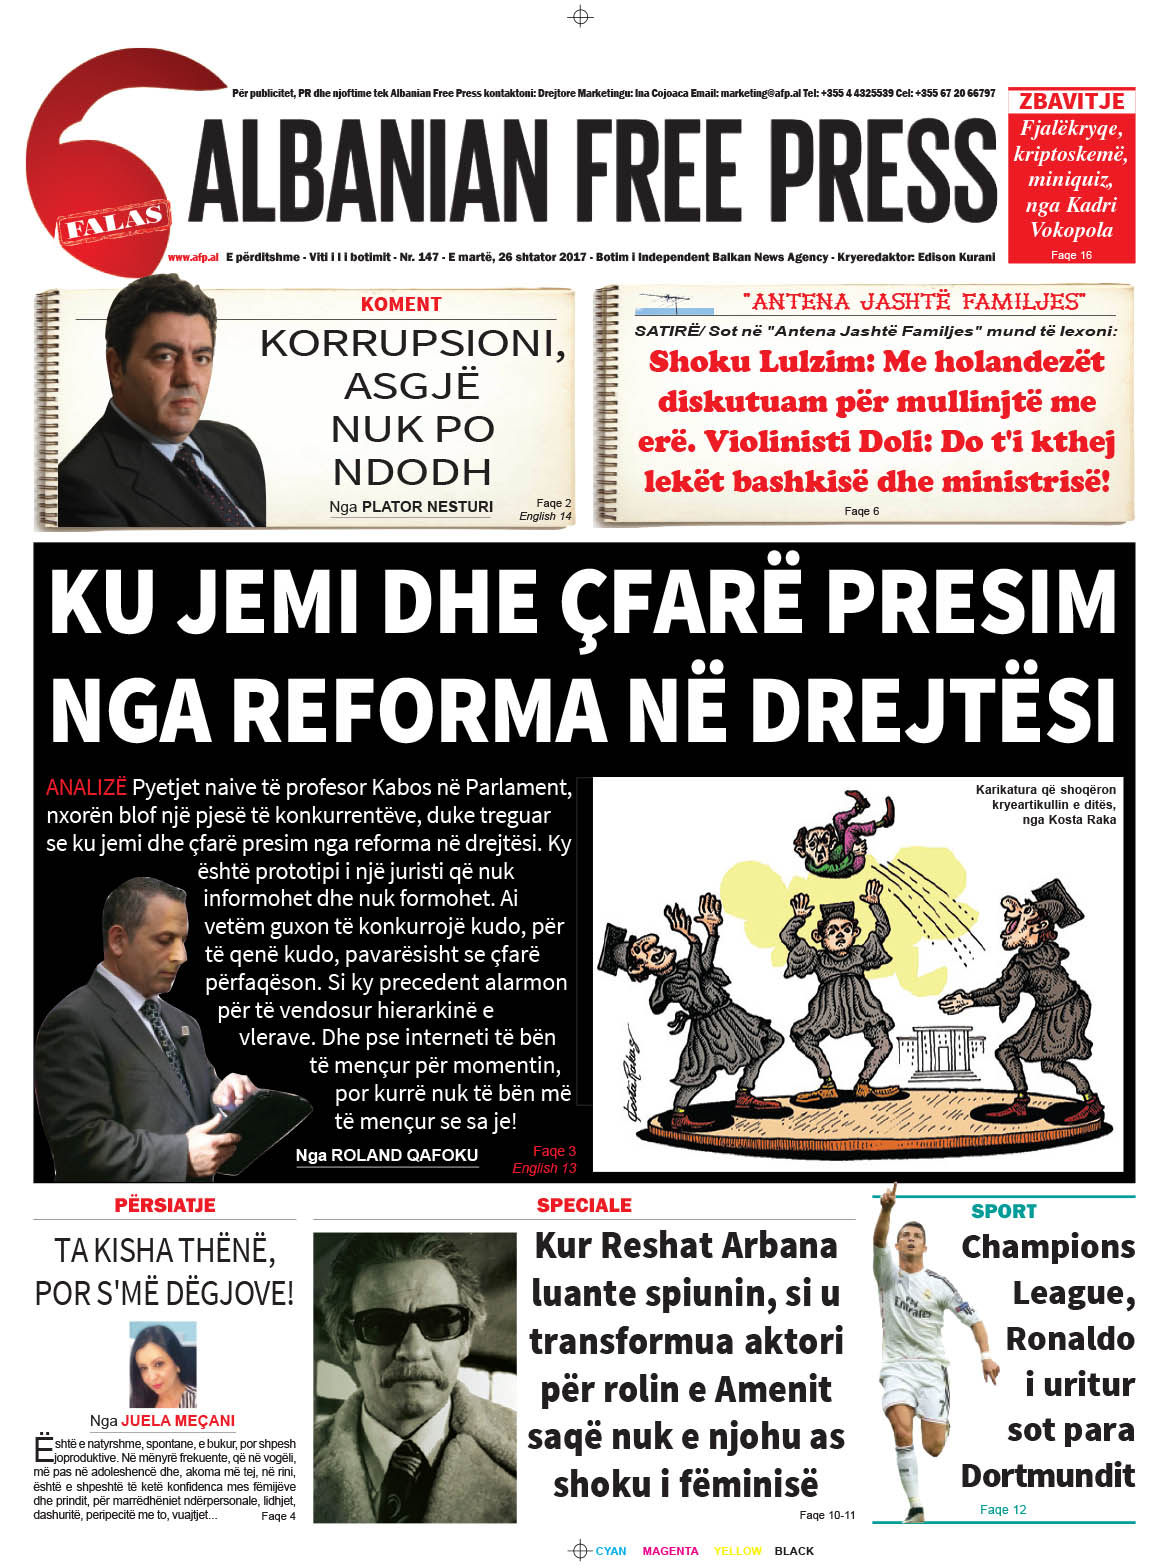 Lexoni sot 26 shtator 2017 në gazetën e përditshme “Albanian Free Press”